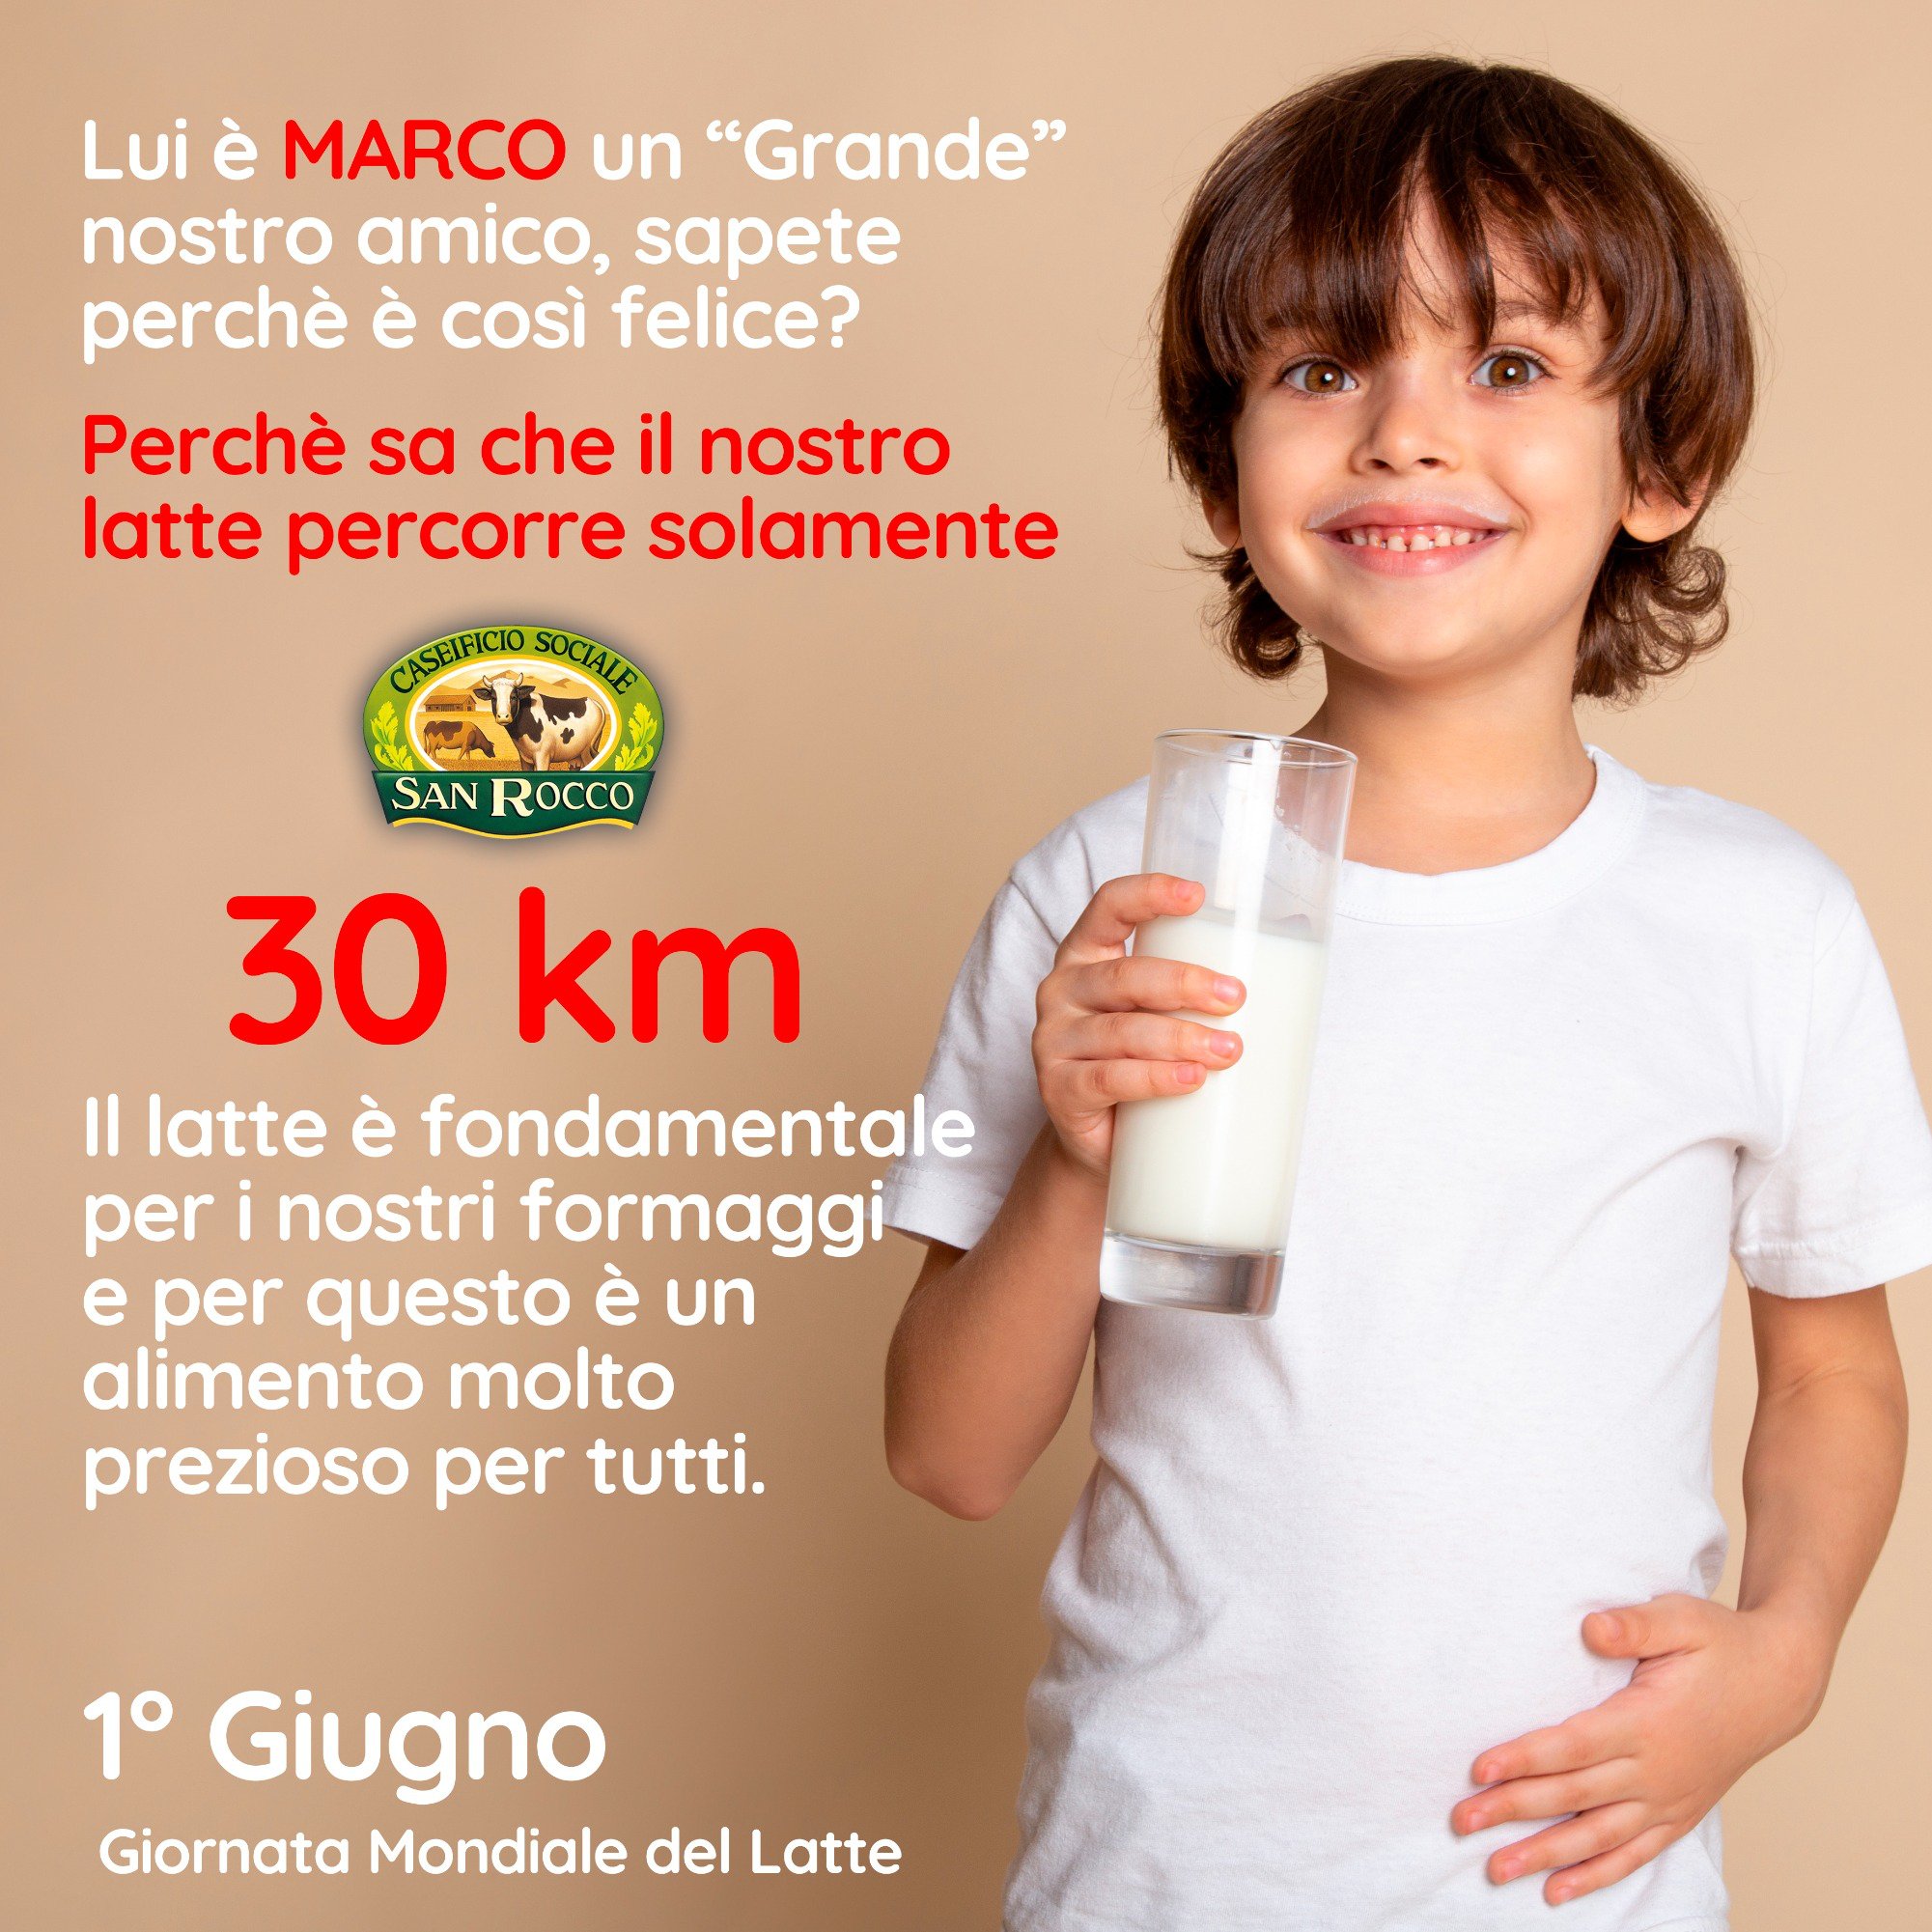 1° Giugno: Giornata Mondiale del Latte